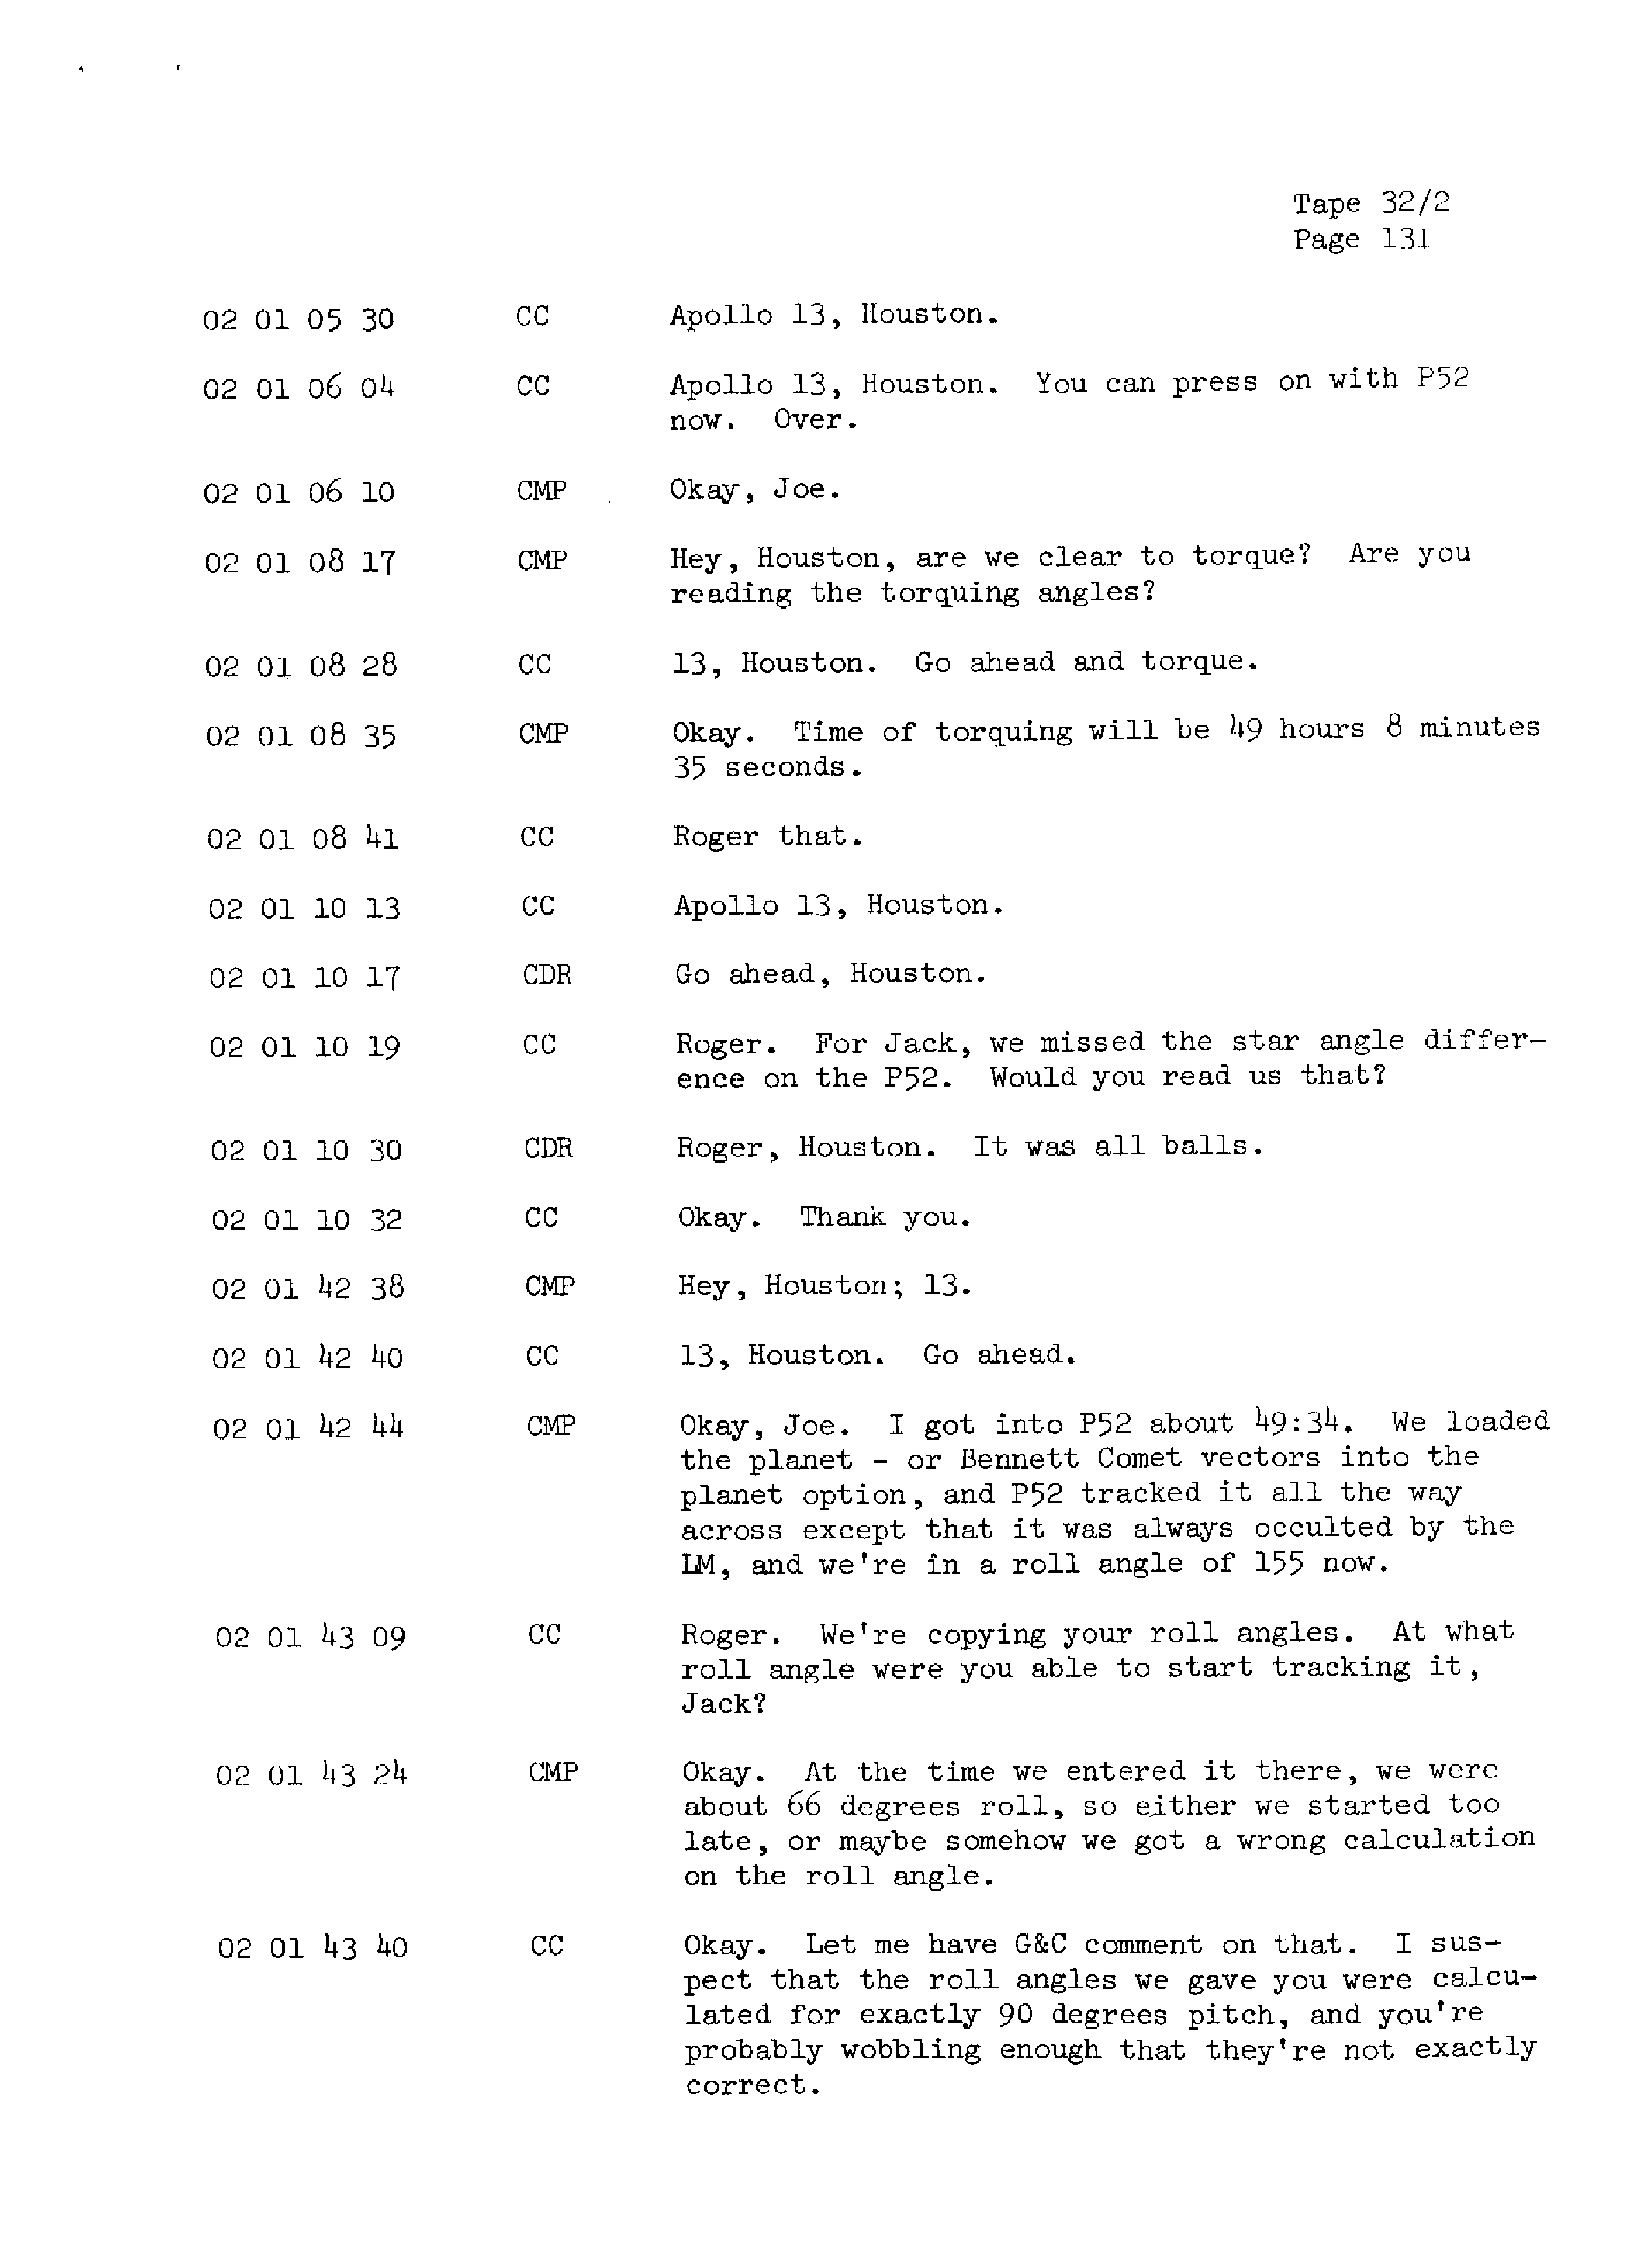 Page 138 of Apollo 13’s original transcript